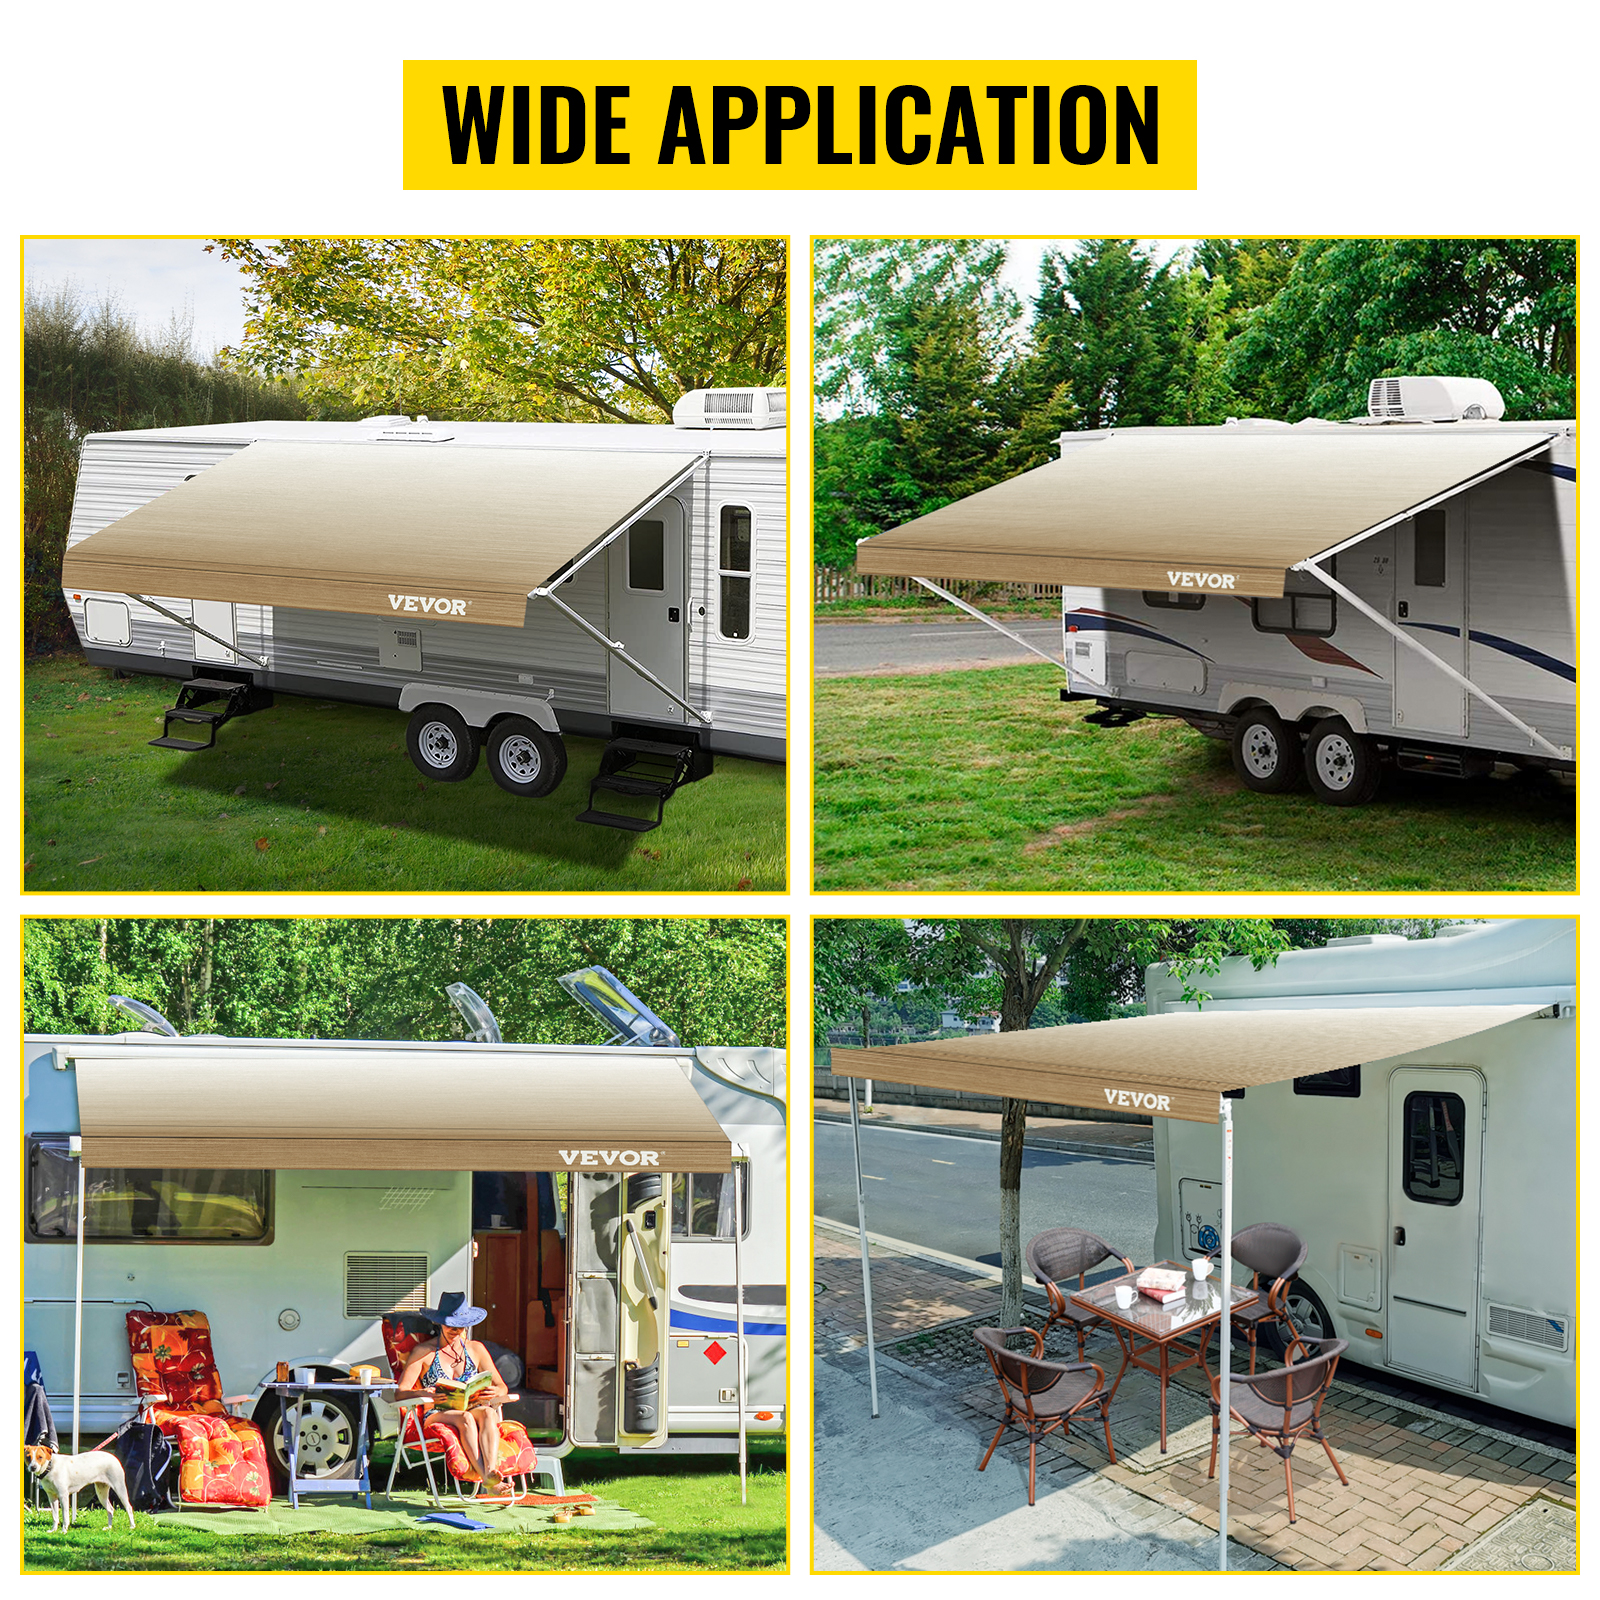 Auvent pare-soleil universel pour camping-car, van, camping-car, remorque,  auvent pour camping-car, noir